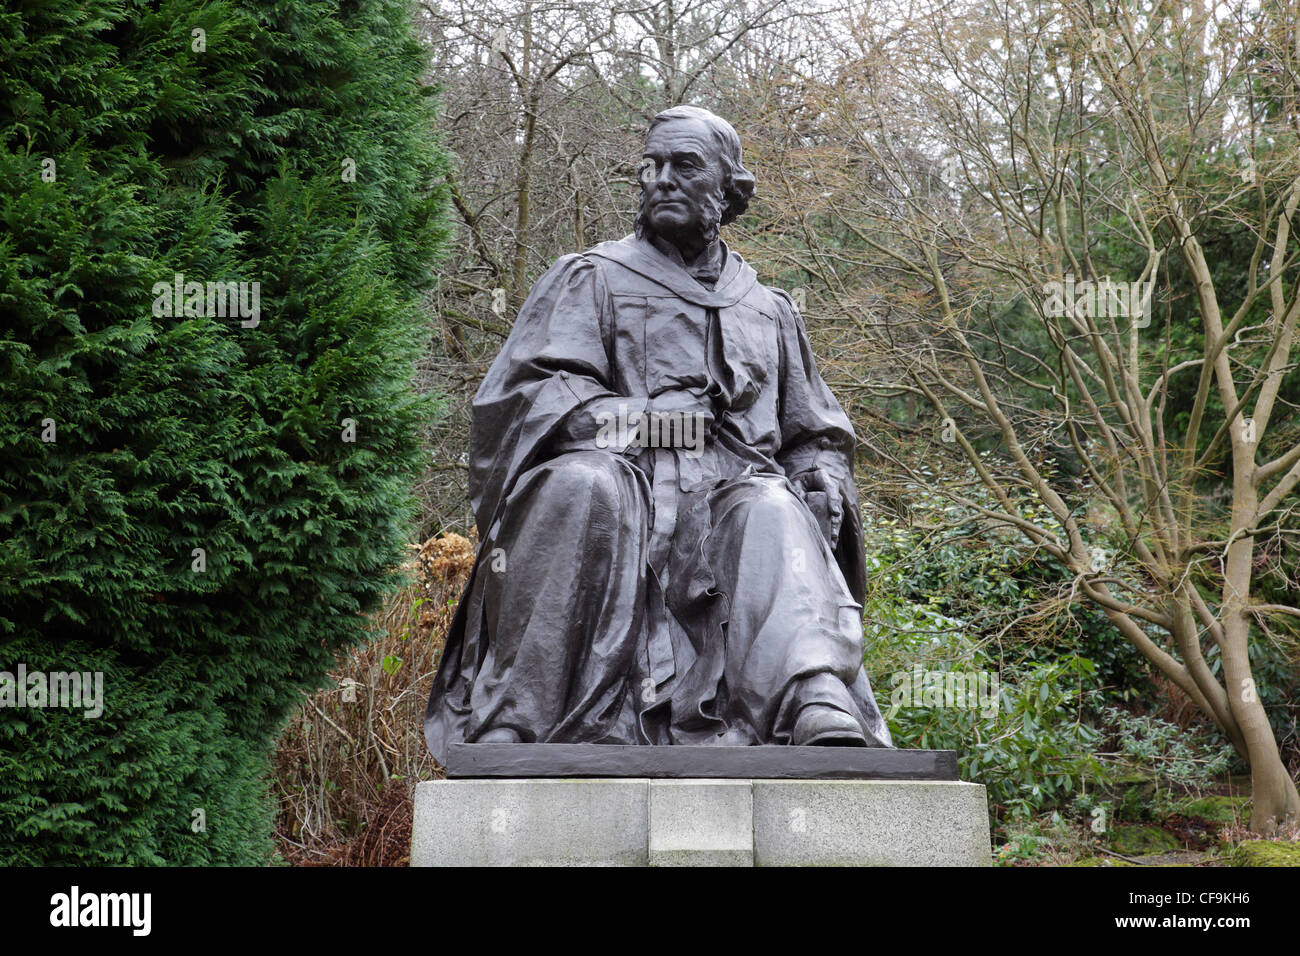 Lord Joseph Lister Surgeon, monument en bronze de George Henry Paulin, parc public Kelvingrove, Glasgow, Écosse, Royaume-Uni Banque D'Images